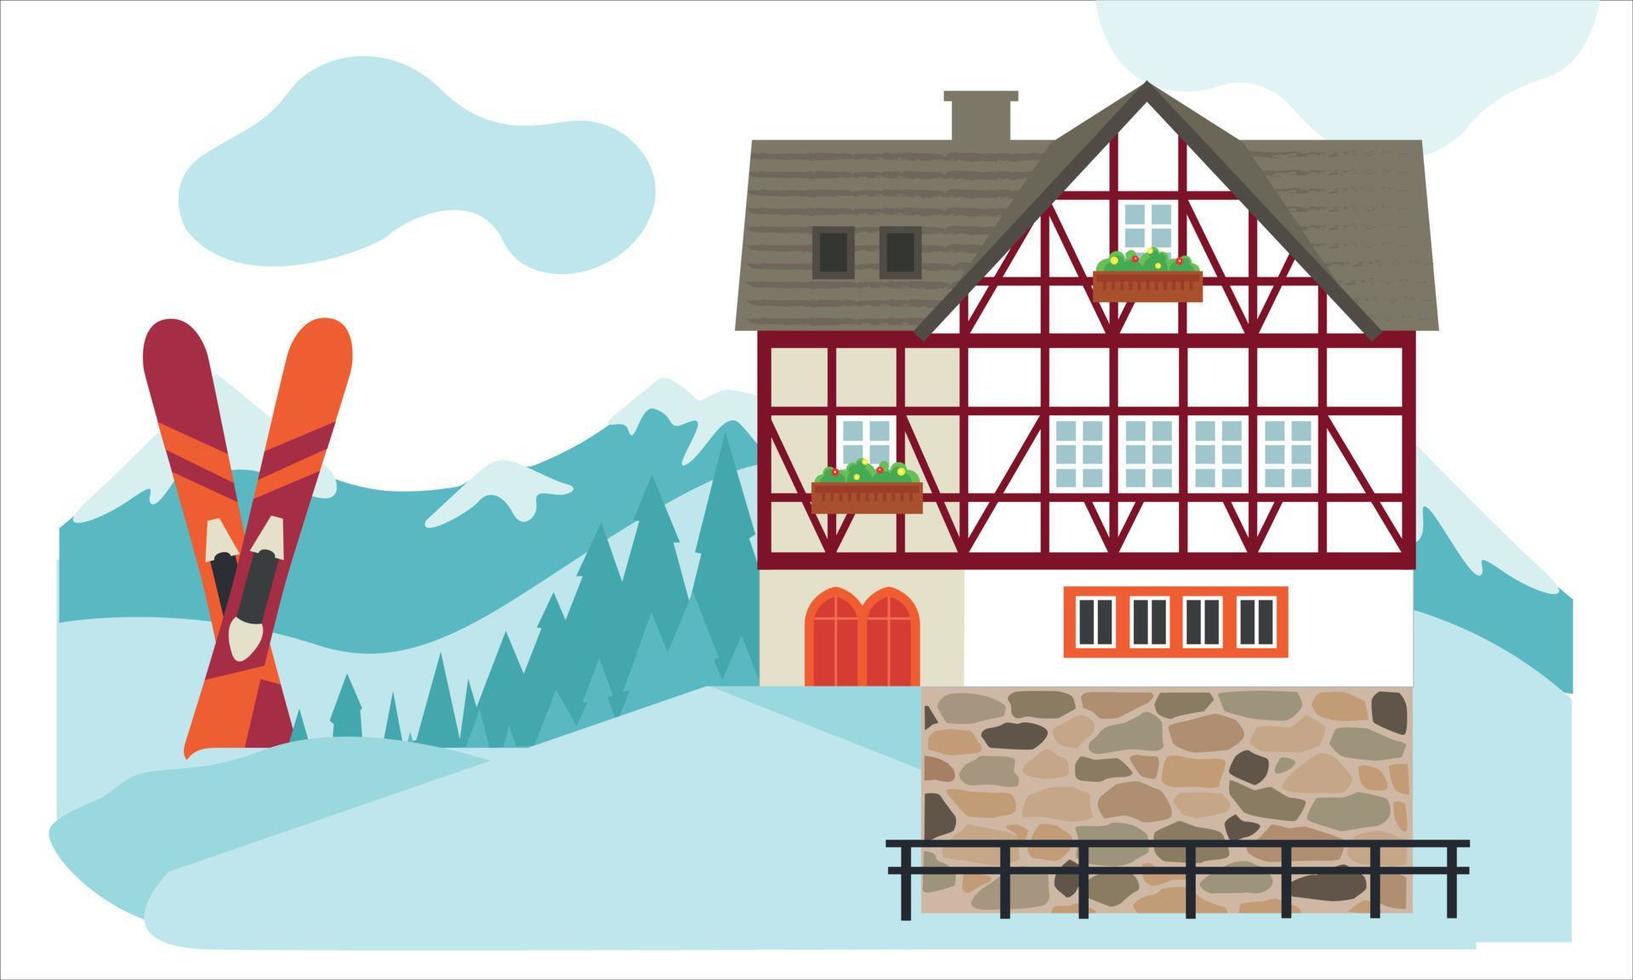 vinter- hus i en mysigt snöig panorama. vinter- by landskap med skidor. vinter- jul landskap. vektor platt illustration.